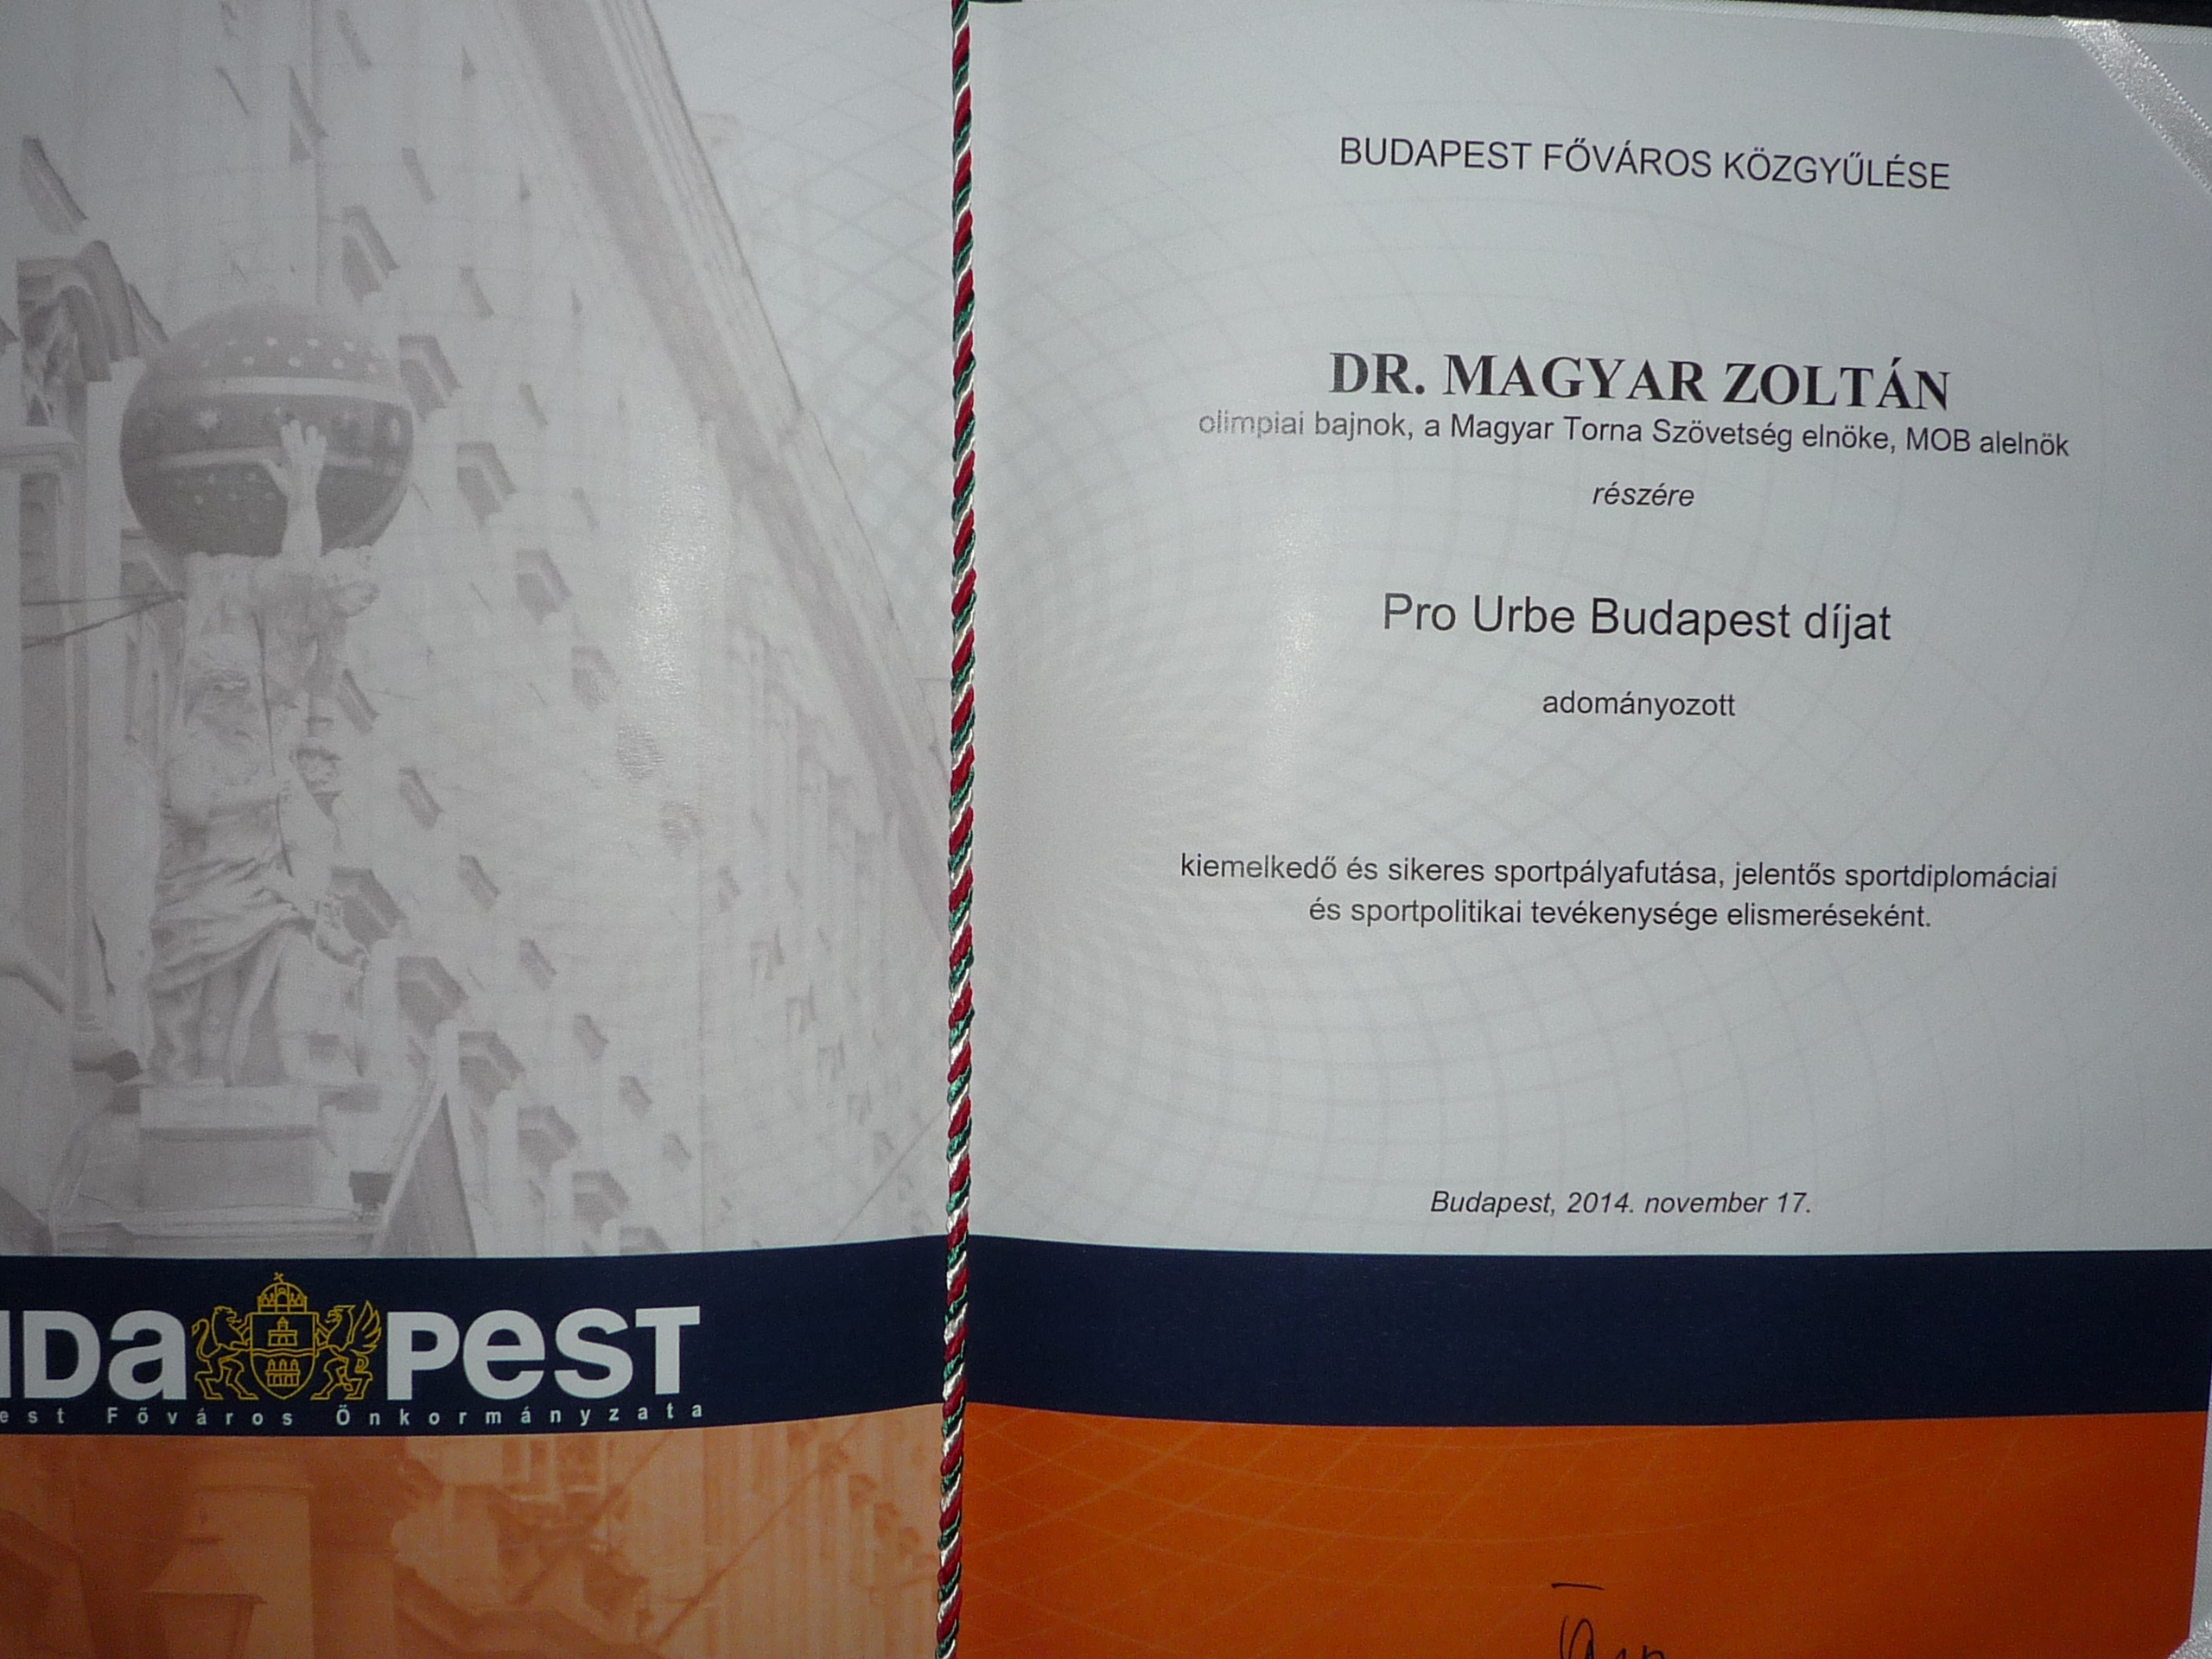 Dr Magyar Zoltán a Pro Urbe díjat kapott